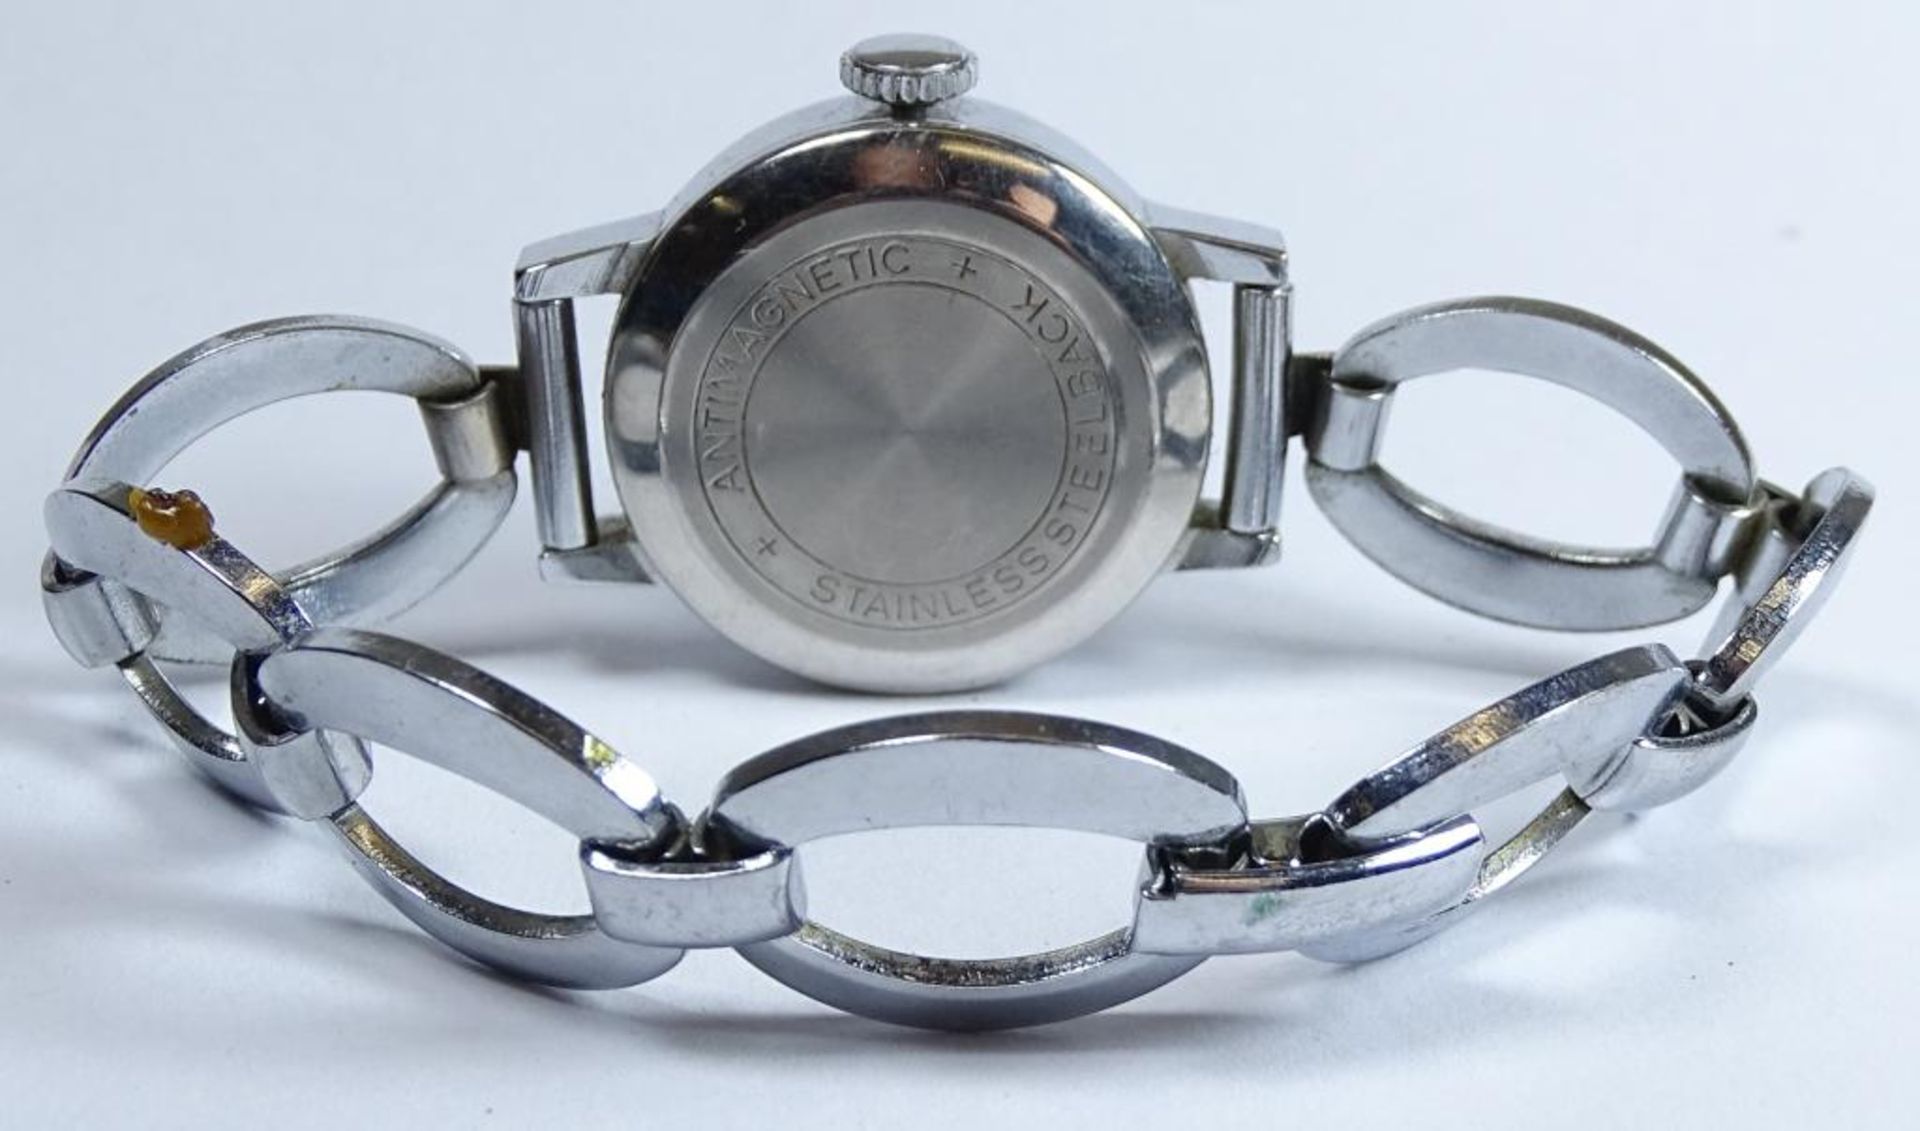 Damen Armbanduhr "Anker",Edelstahl,Handaufzug,Werk läuft,d-26mm,Kratzer auf dem Gla - Bild 3 aus 4